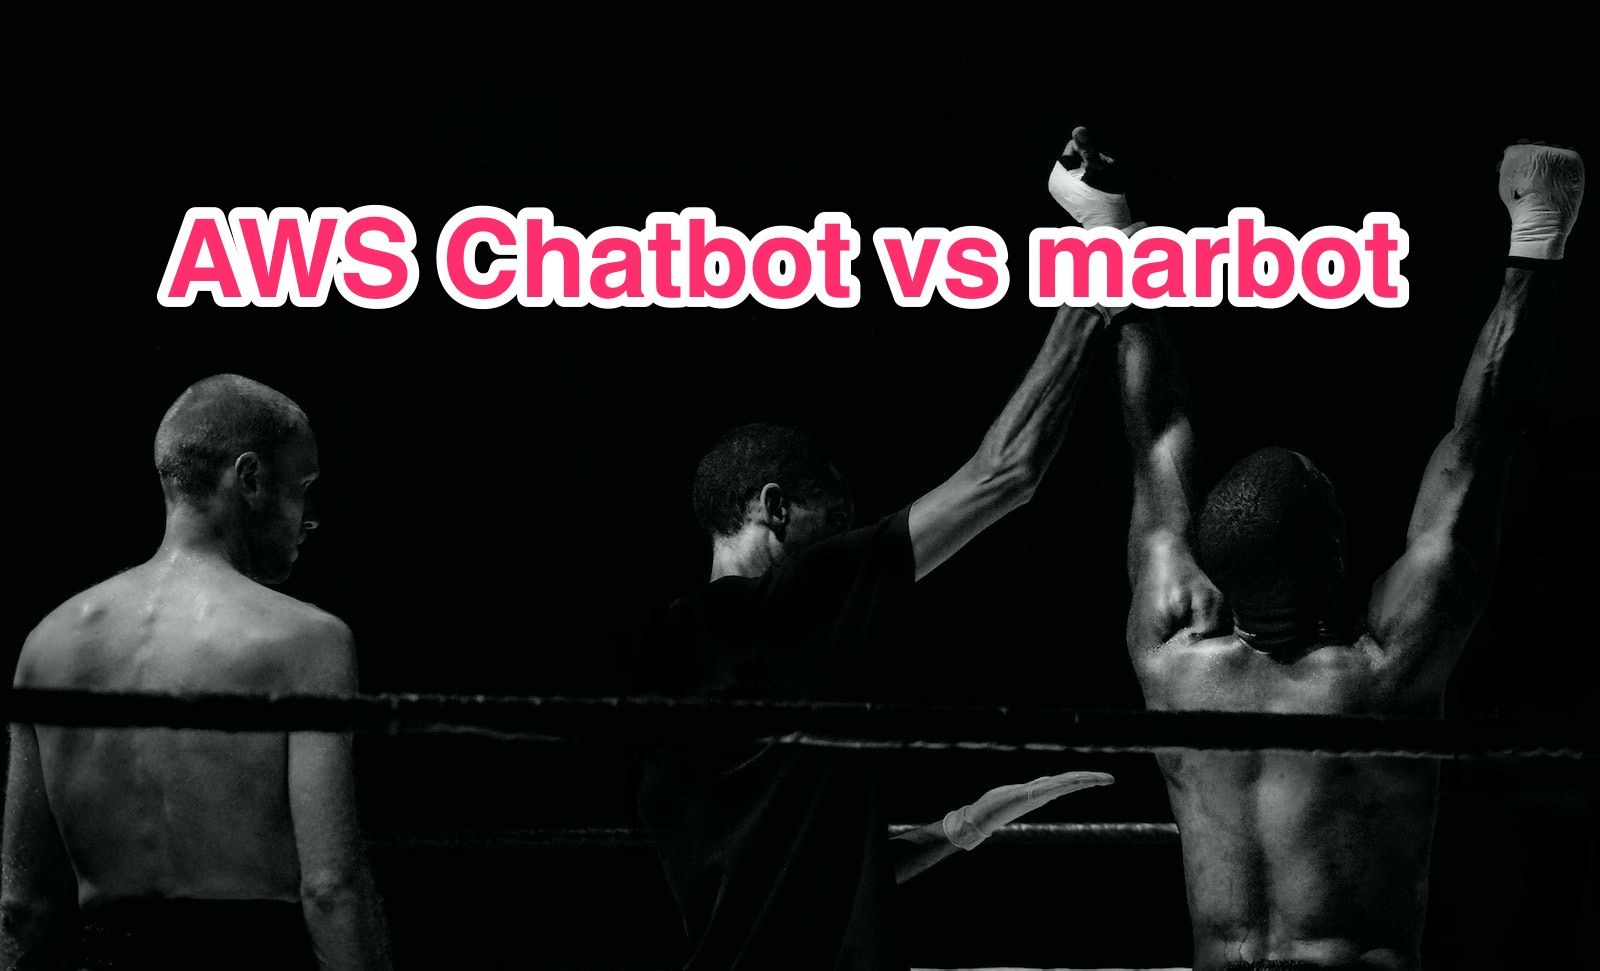 AWS Chatbot vs marbot